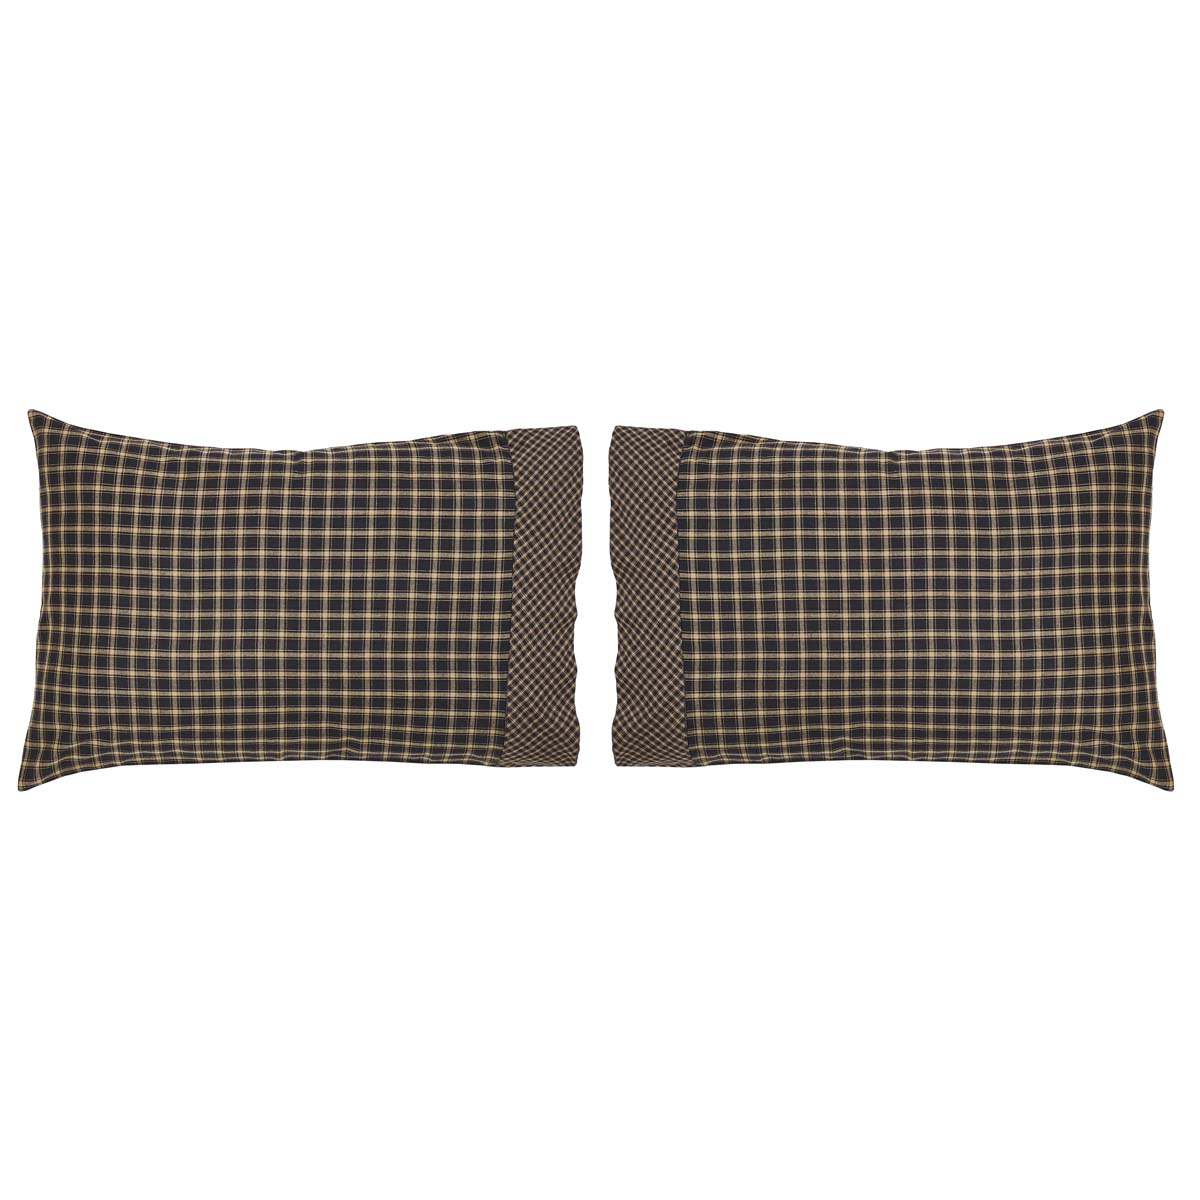 Oak & Asher Beckham Standard Pillow Case Set of 2 - 21x30 By VHC Brands